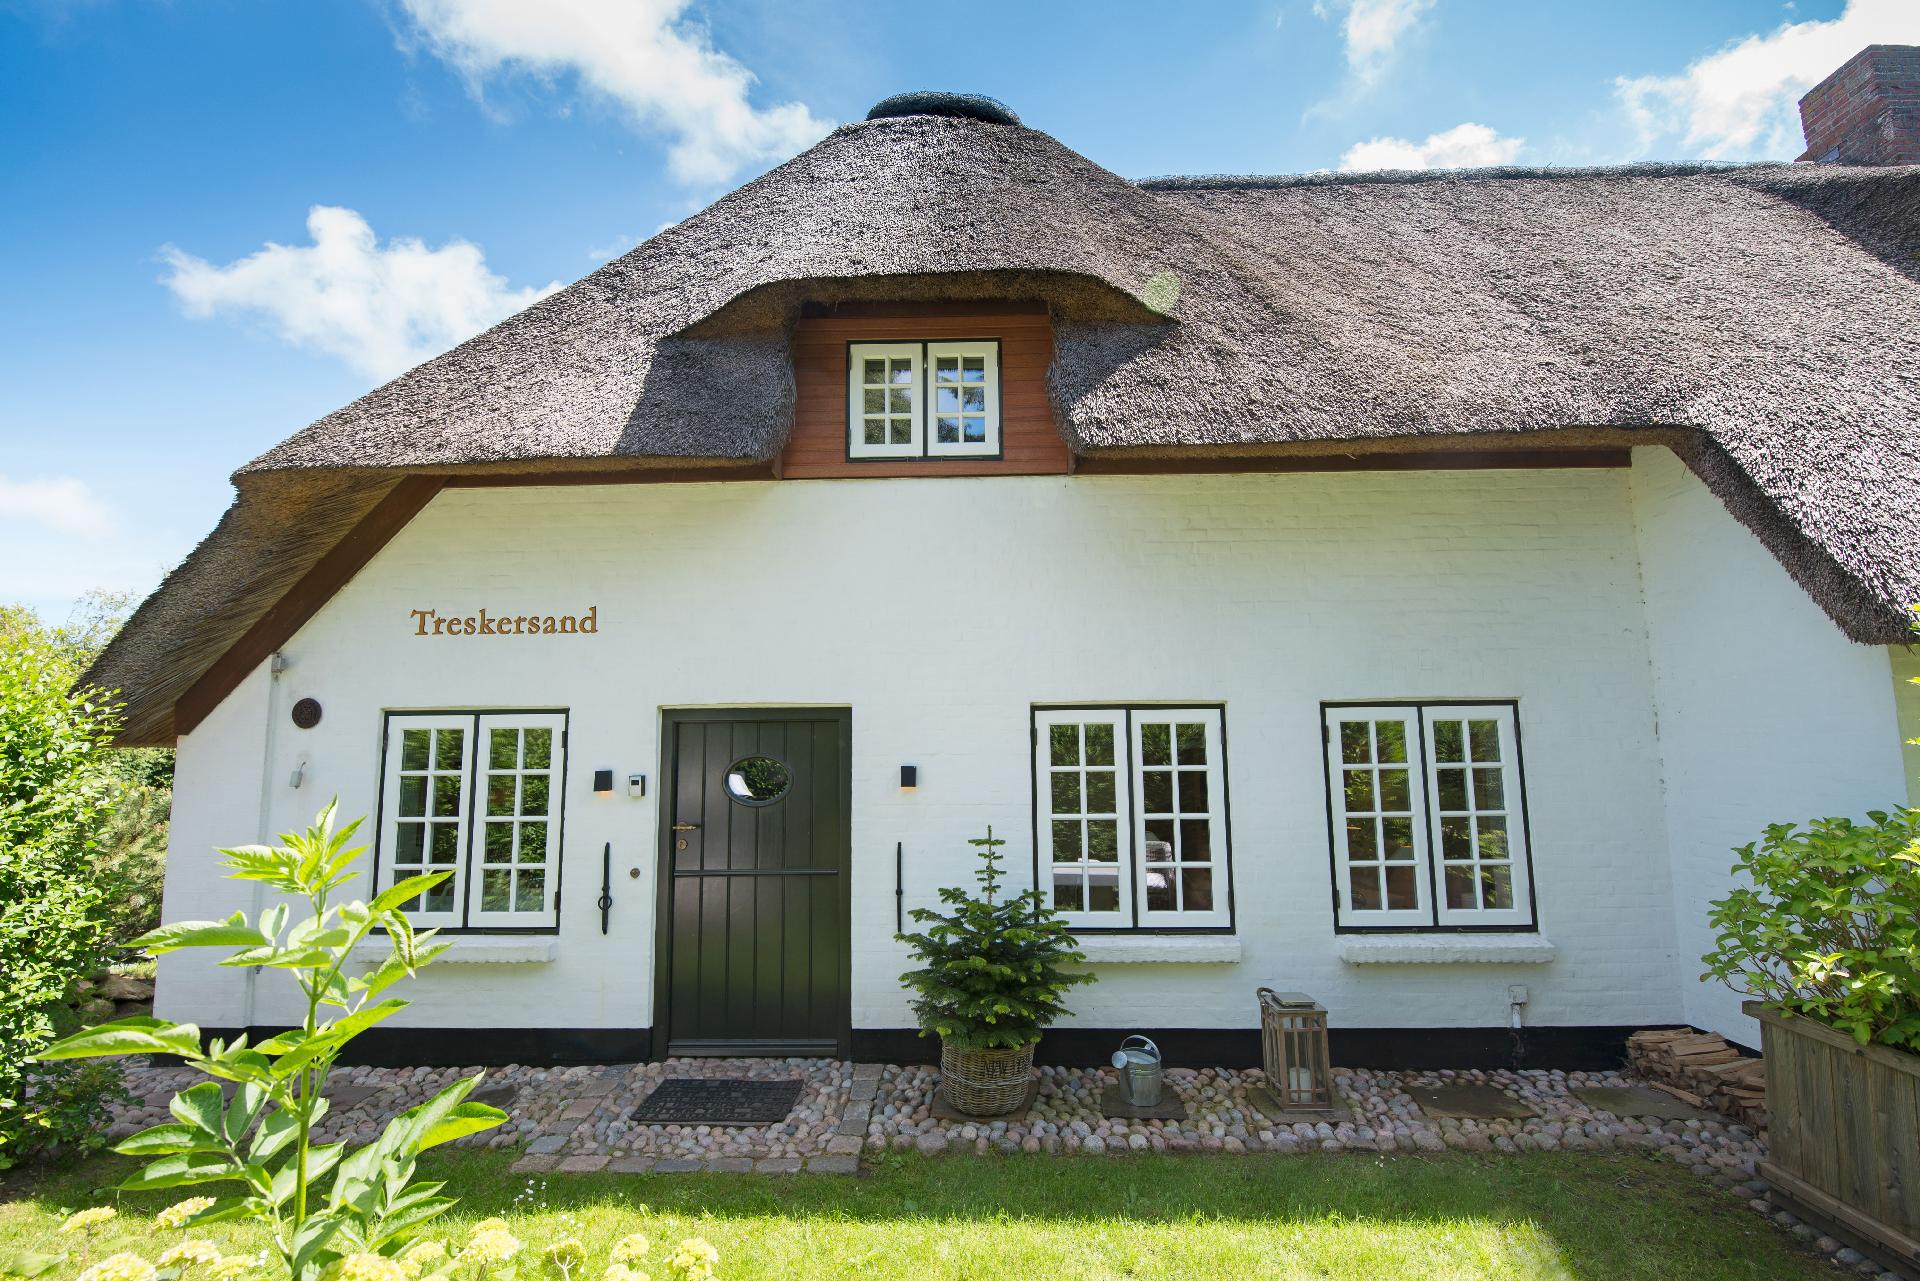 Sehr luxuriöses Apartment in einem Reetdachha Ferienhaus in Schleswig Holstein